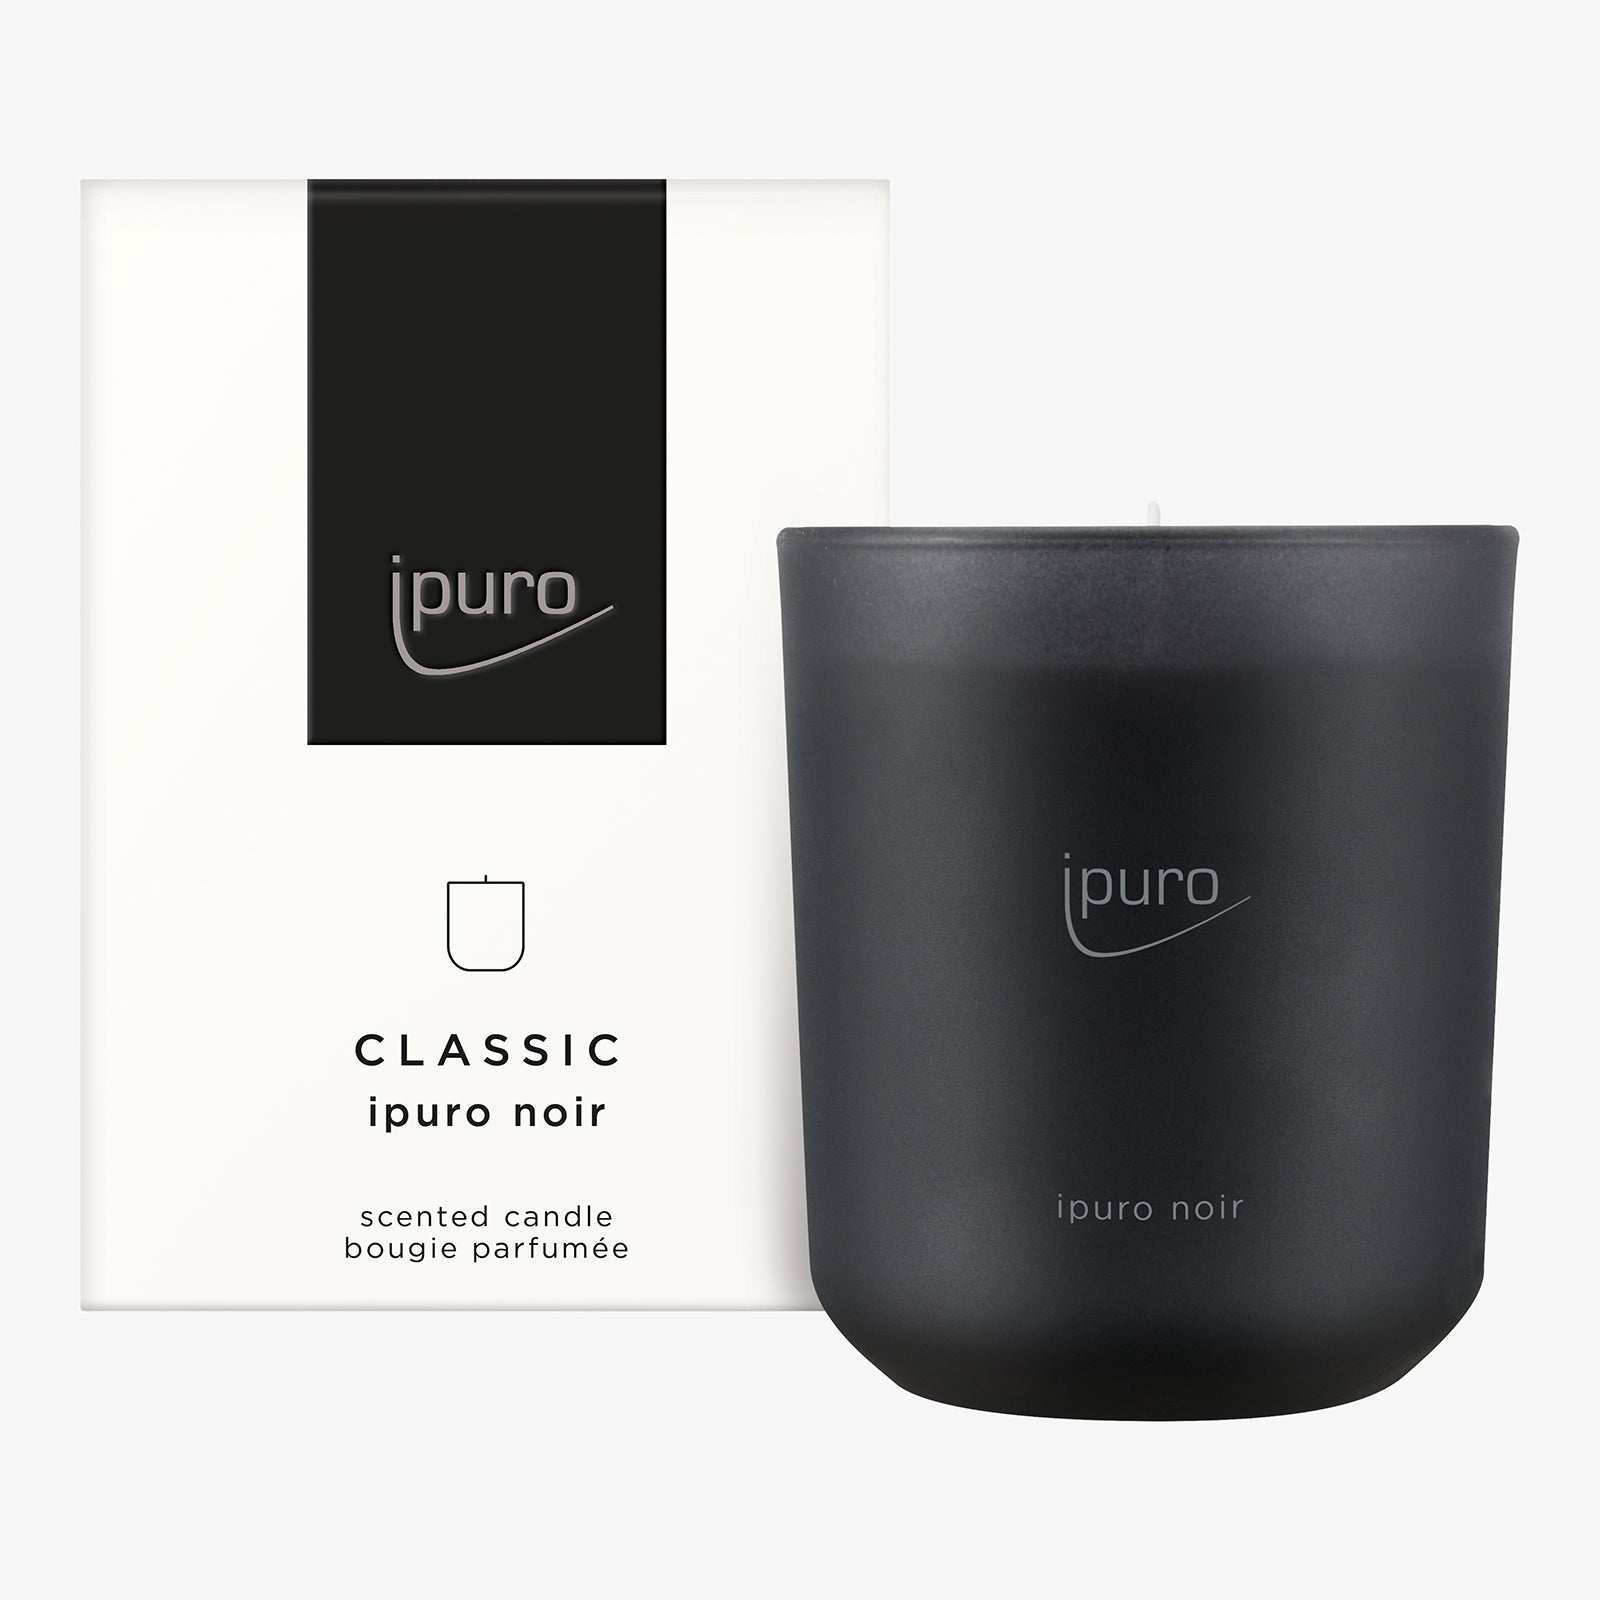 Classic Noir Duftkerze [Ipuro] » Für 16,99 € online kaufen